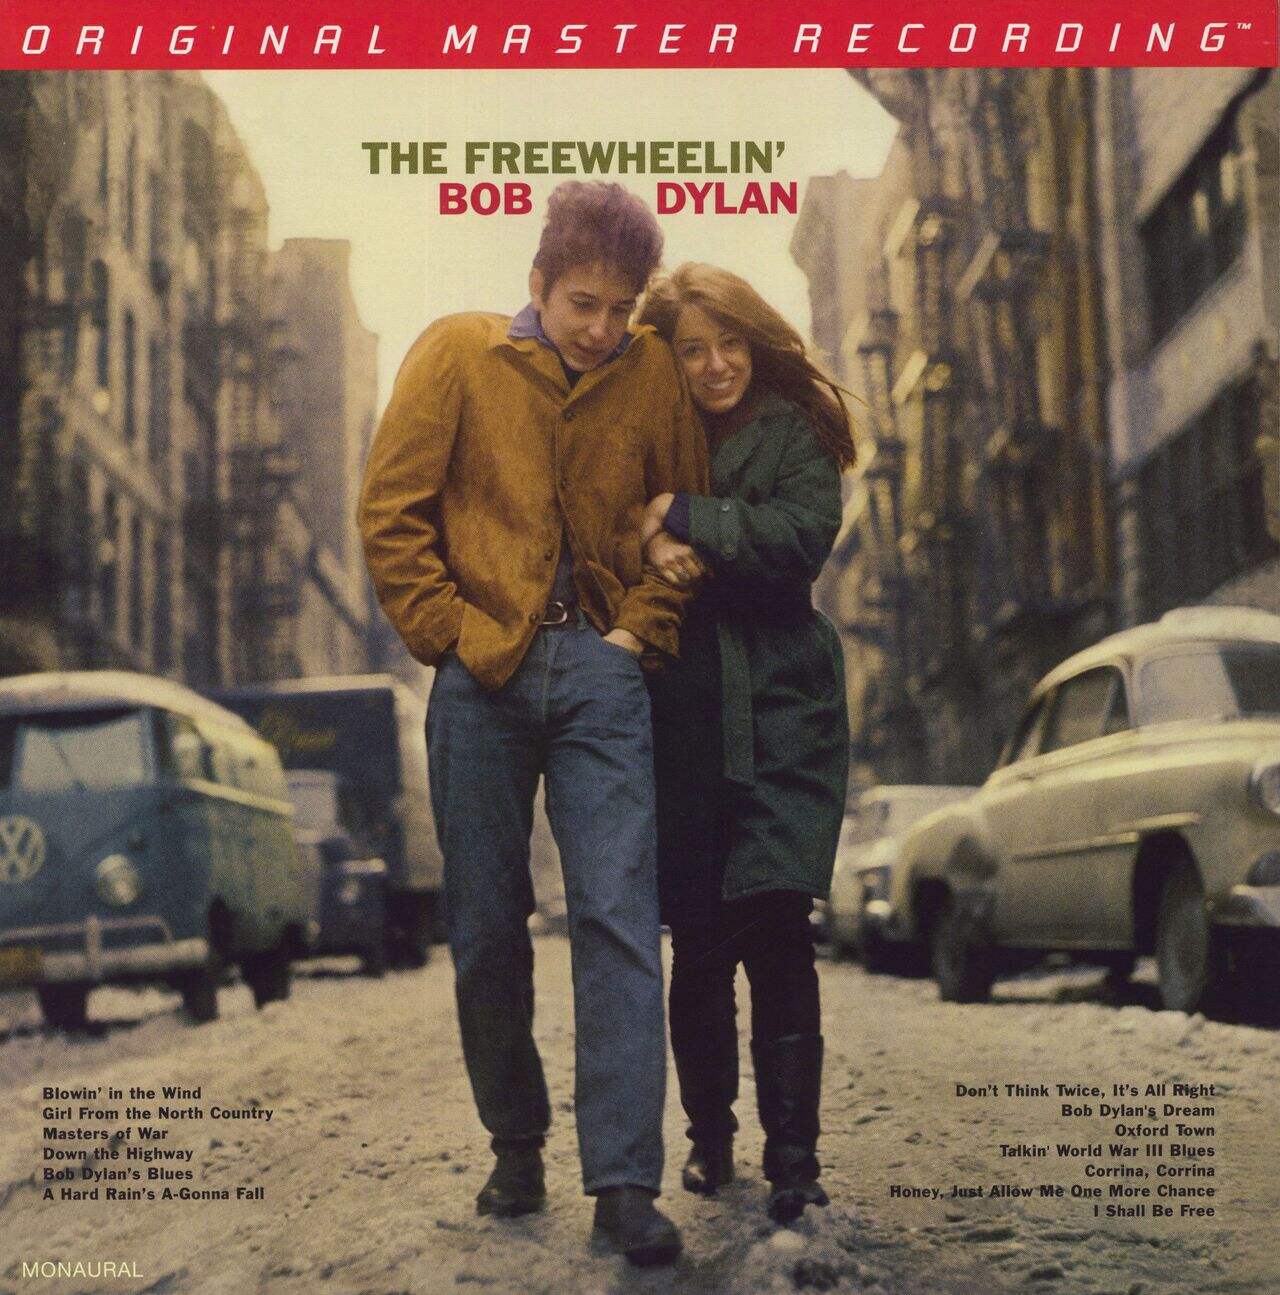 Bob Dylan The Freewheelin' Bob Dylan - 180gm 45rpm US 2-LP vinyl set